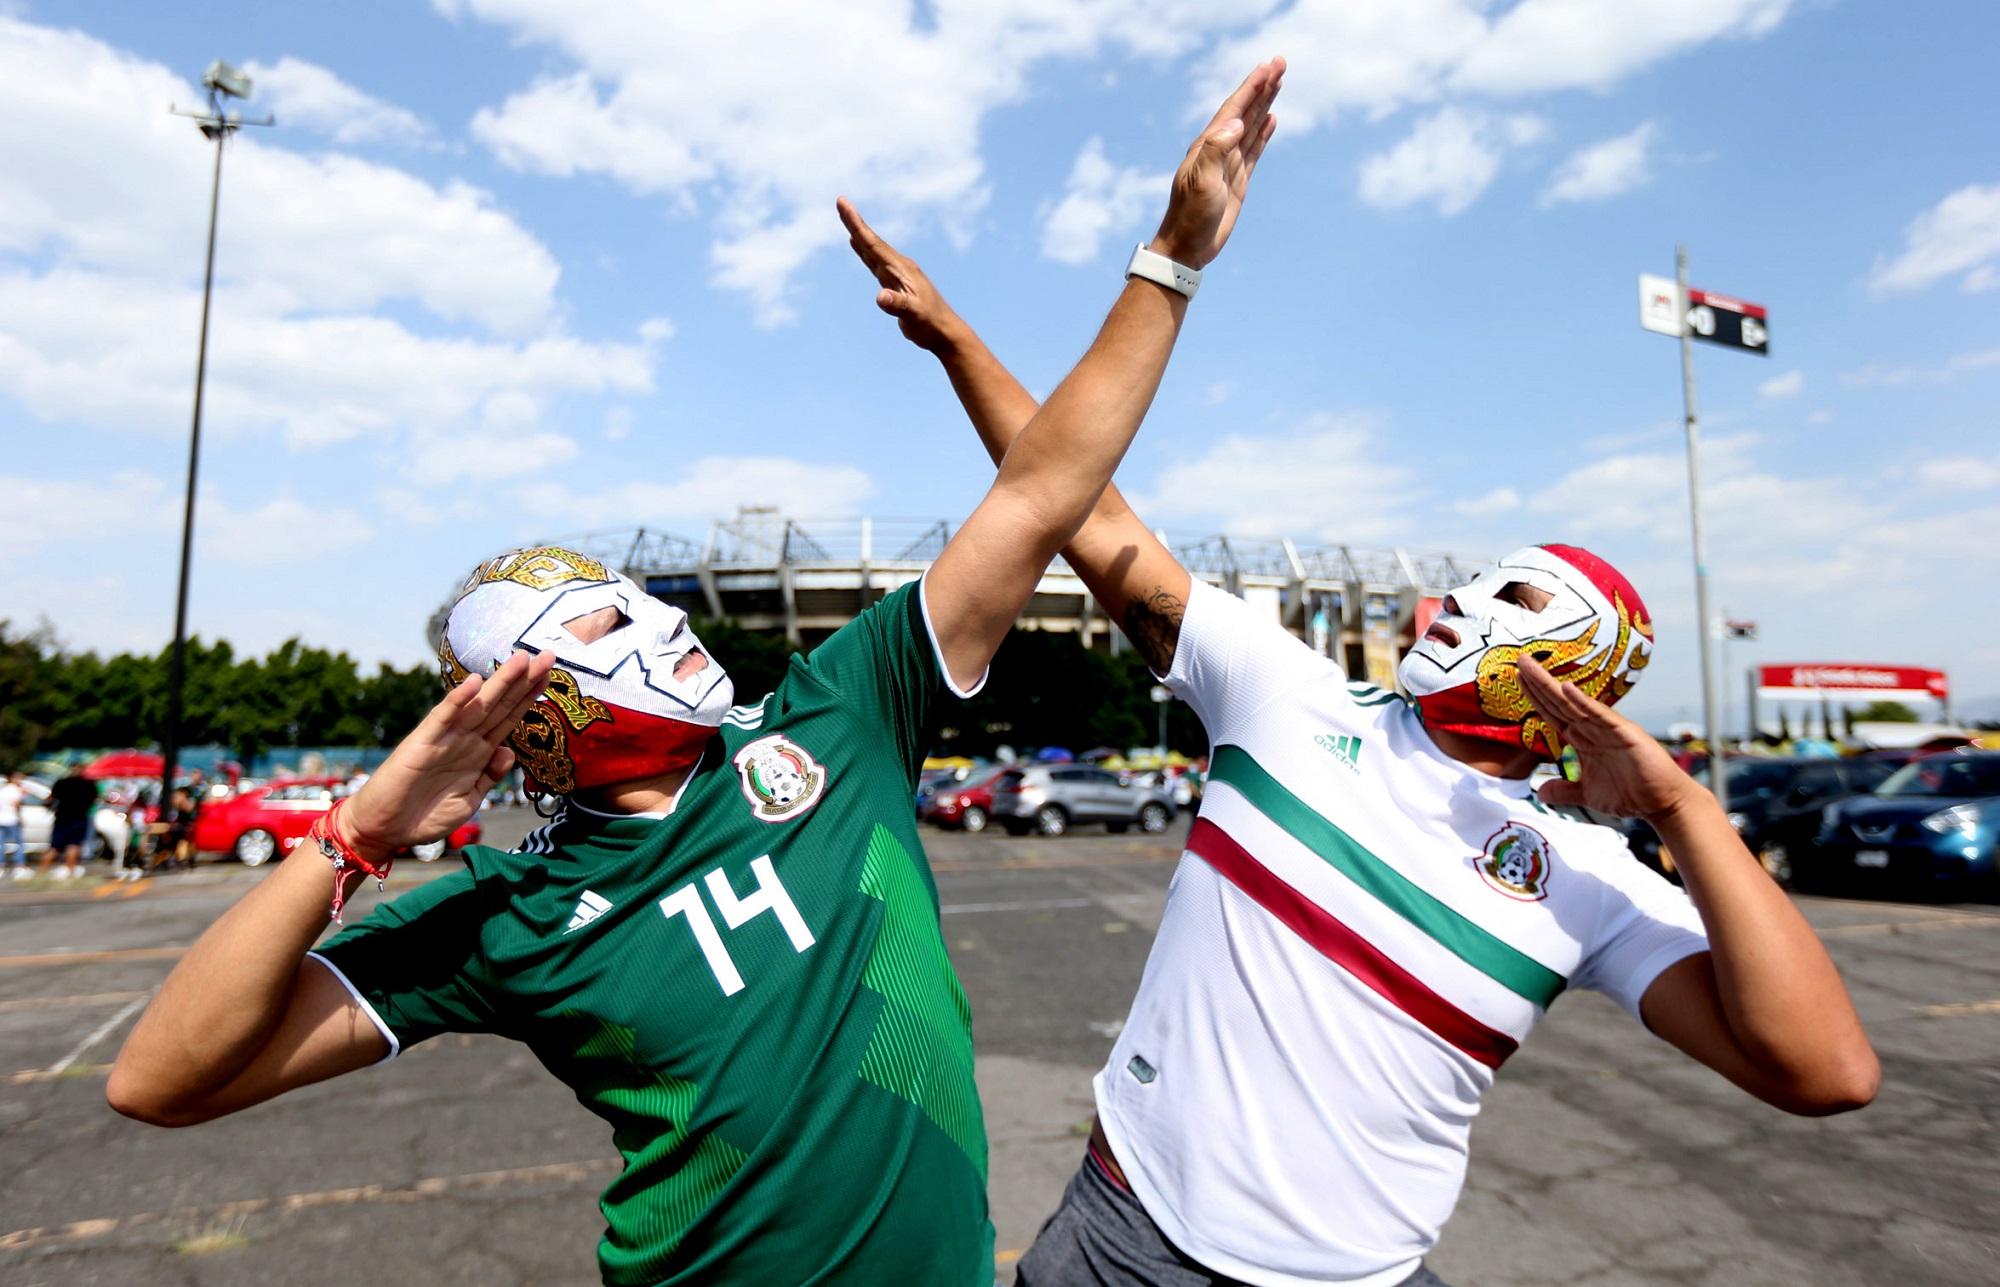 Dos aficionados de la sección azteca posan con el gesto con el que Cuauhtémoc Blanco celebraba los goles para el fotógrafo de la agencia Xinhua frente al mítico Estadio Azteca de Ciudad de México. Foto Xinhua.